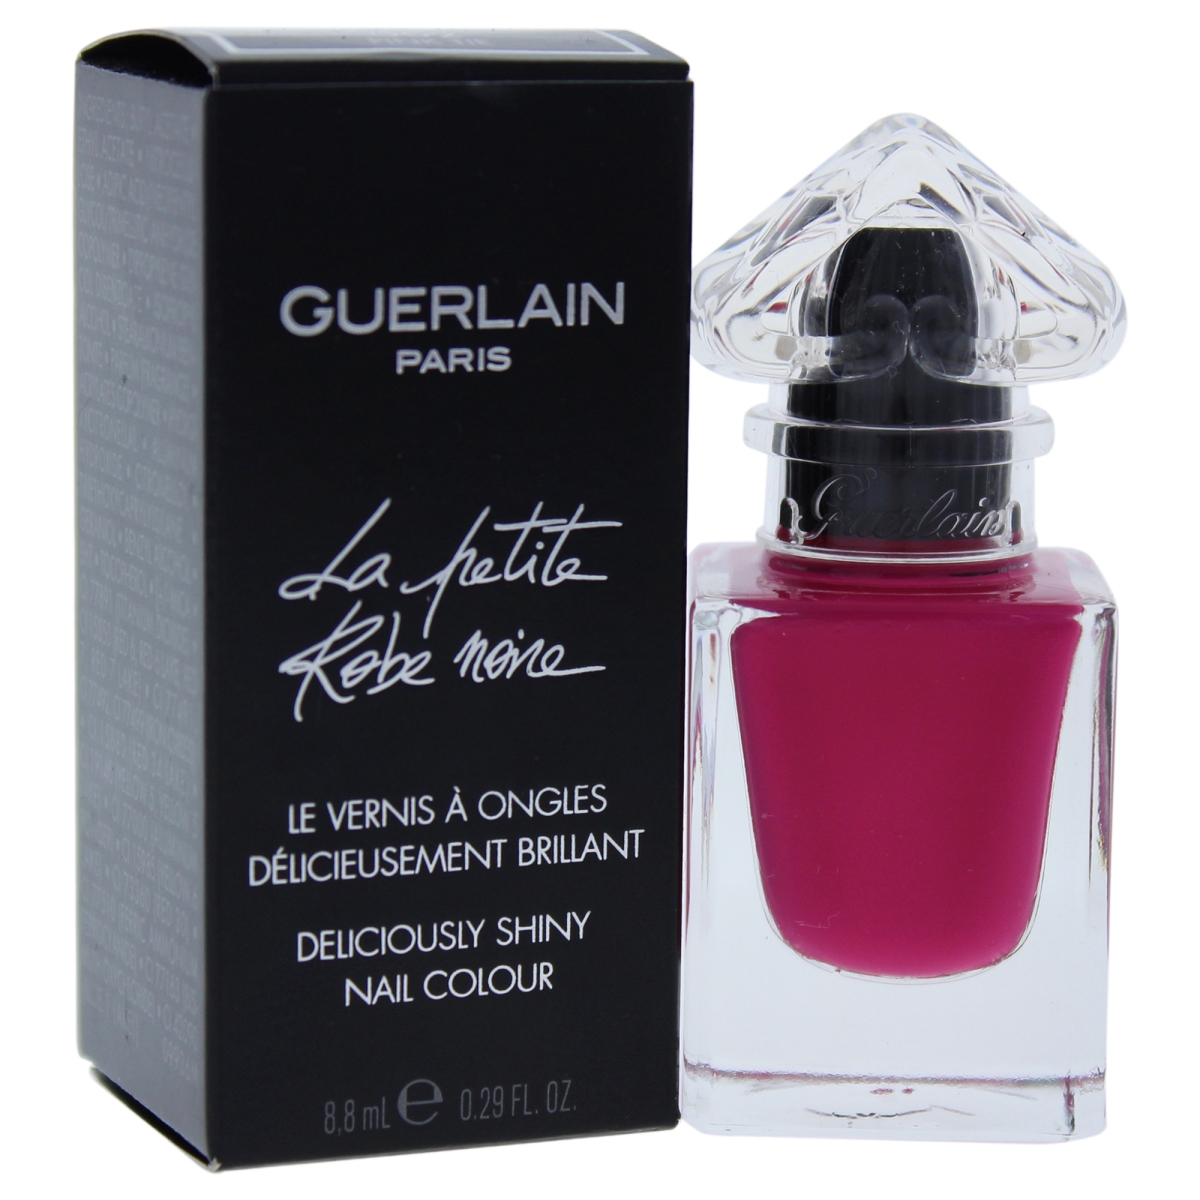 Picture of Guerlain W-C-12905 0.29 oz La Petite Robe Noire Nail Colour - No.002 Pink Tie for Women